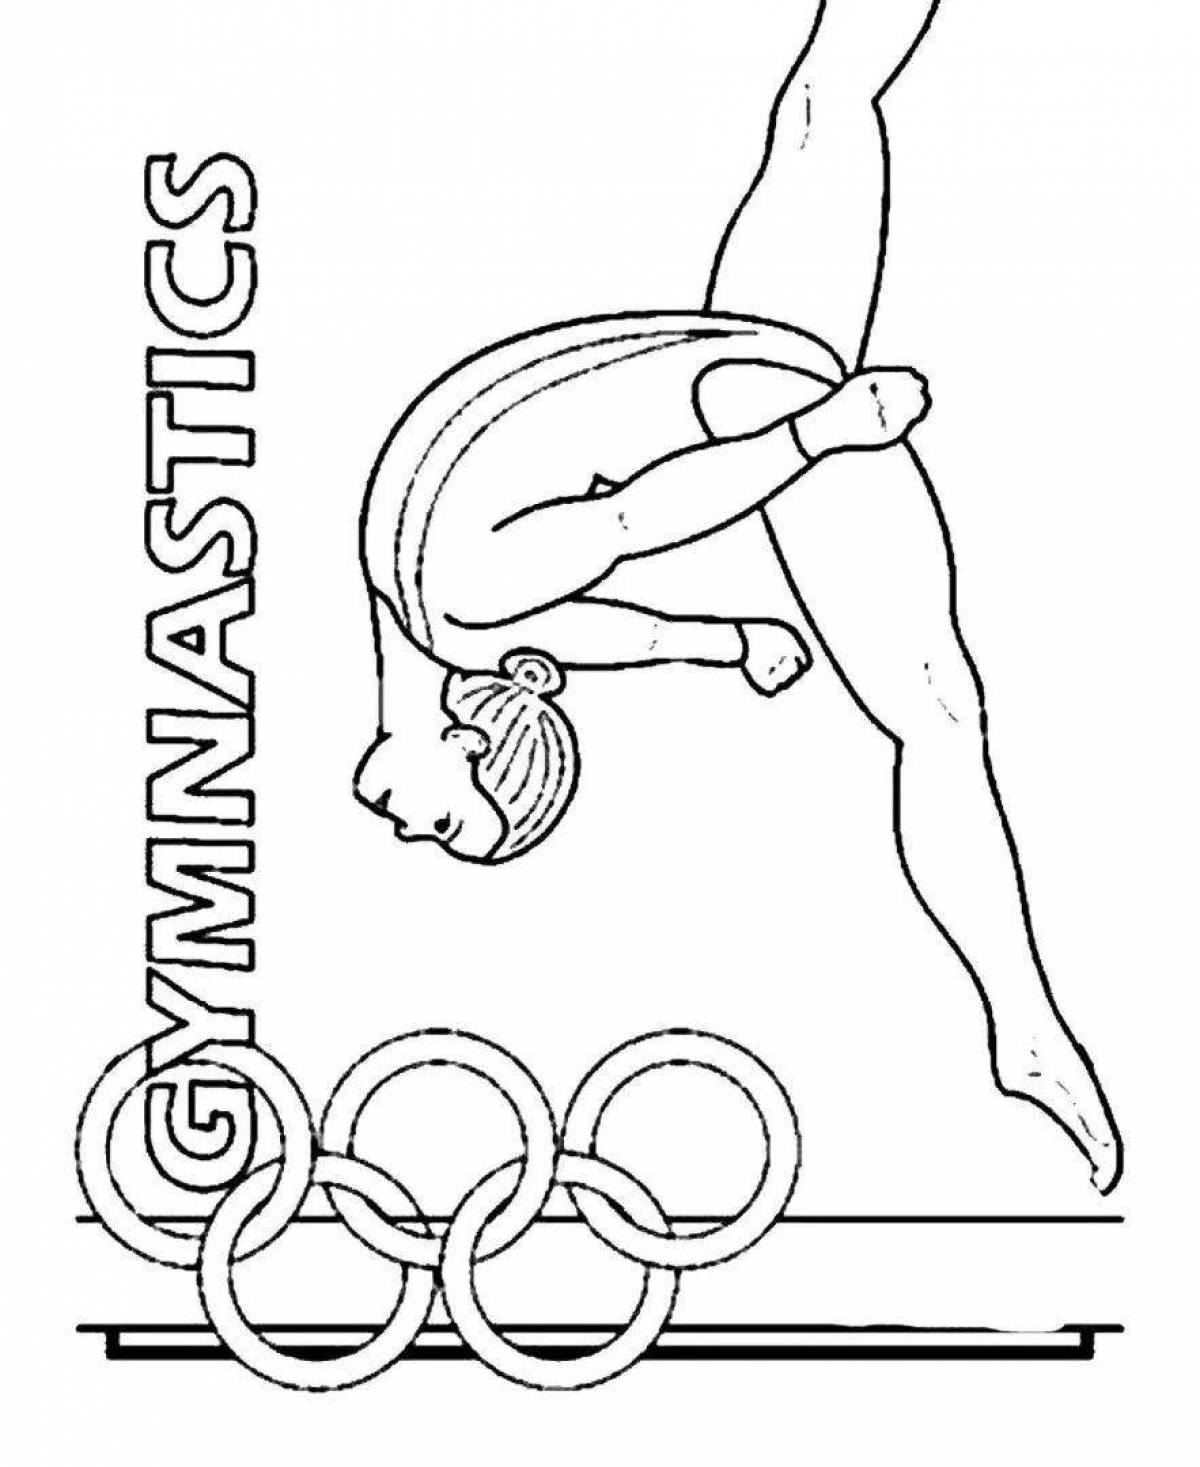 Coloring page dazzling gymnastics